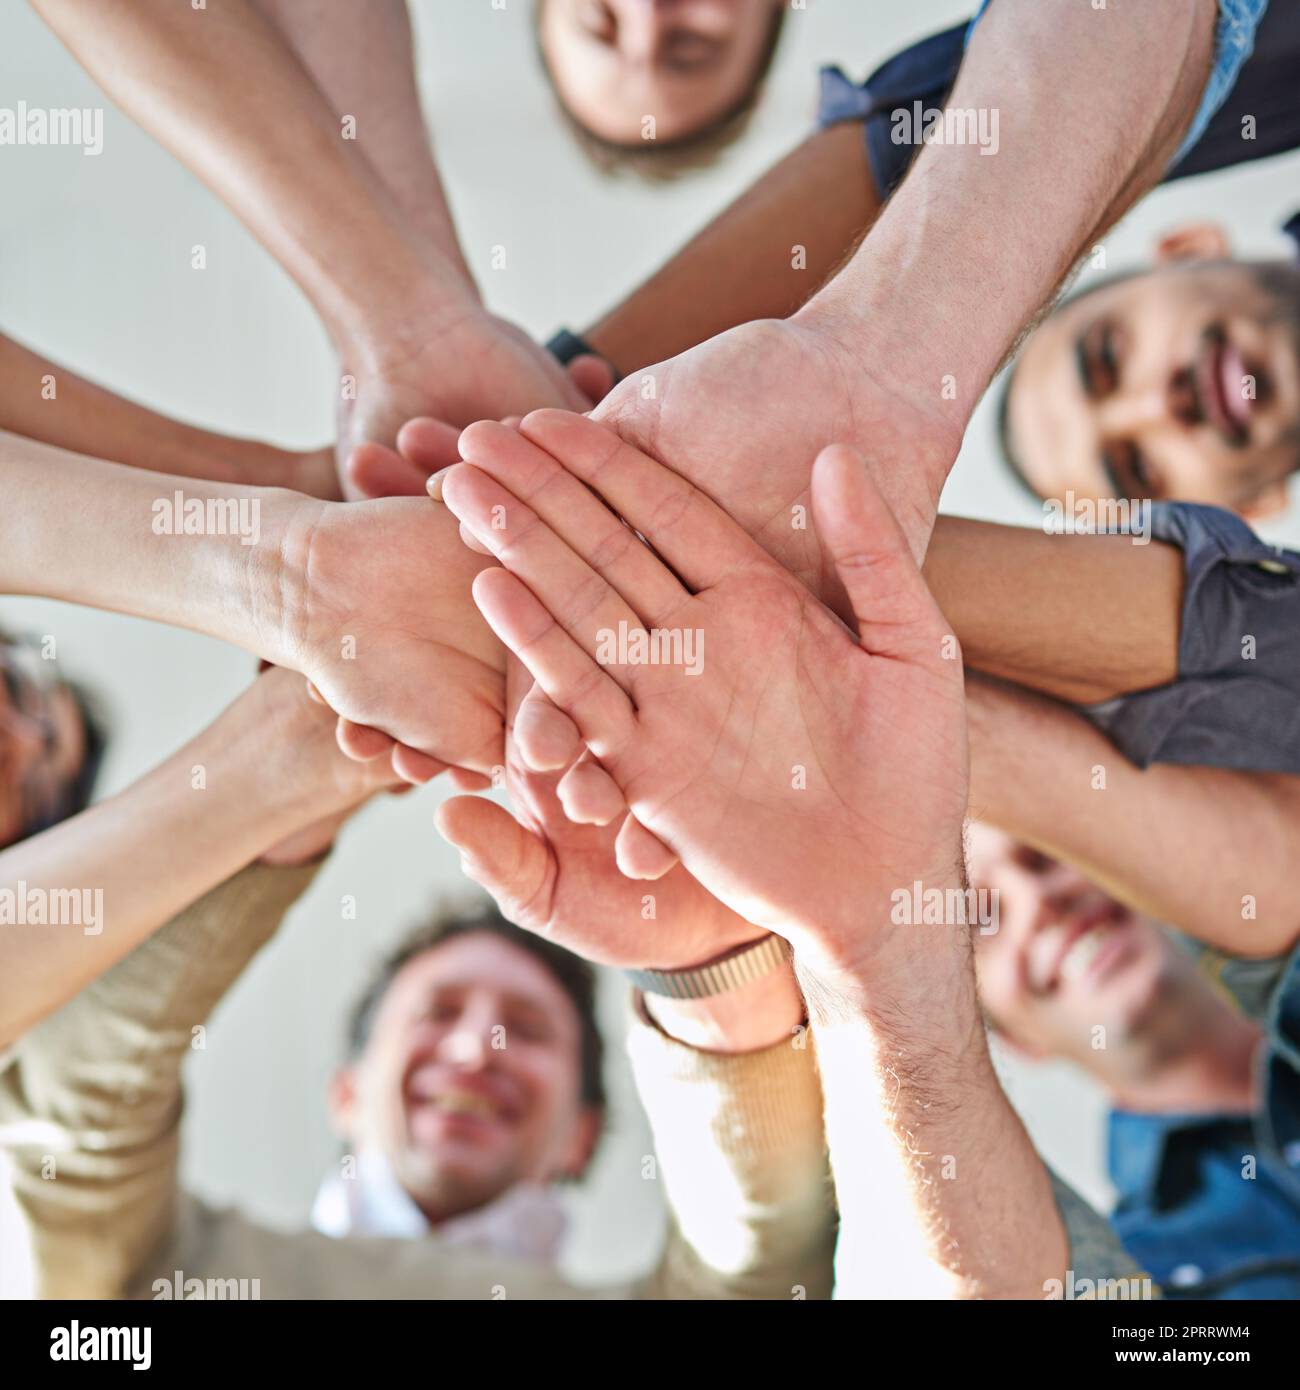 Teamarbeit teilt die Aufgabe und vervielfacht den Erfolg. Aufnahme einer Gruppe von Mitarbeitern, die ihre Hände übereinander stapeln. Stockfoto